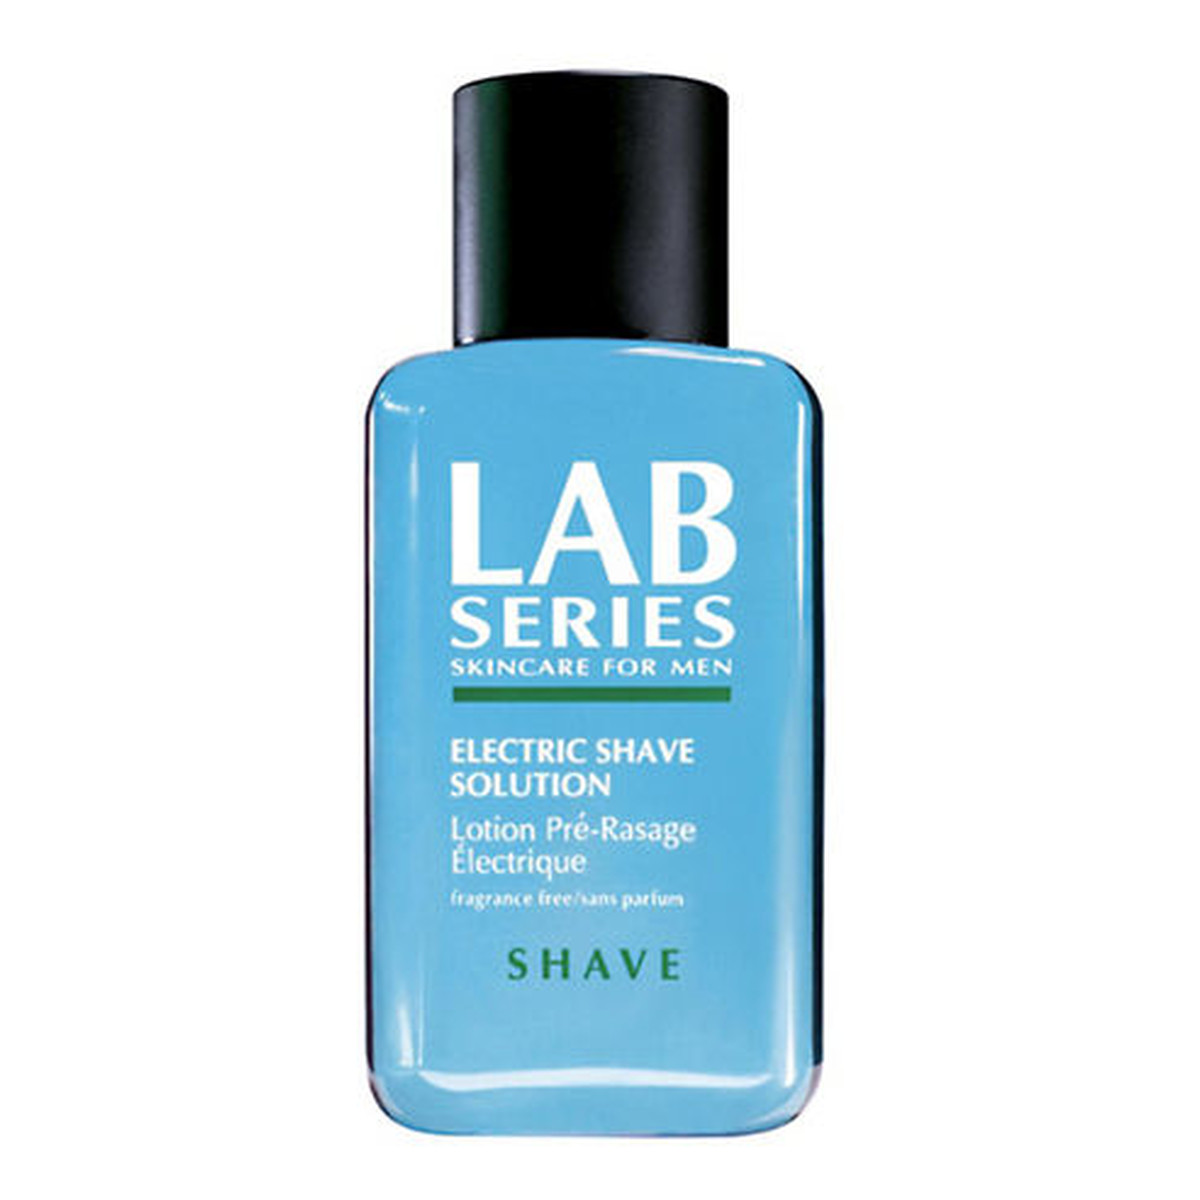 Lab Series Shave Electric Shave Solution płyn do golenia maszynką elektryczną 100ml